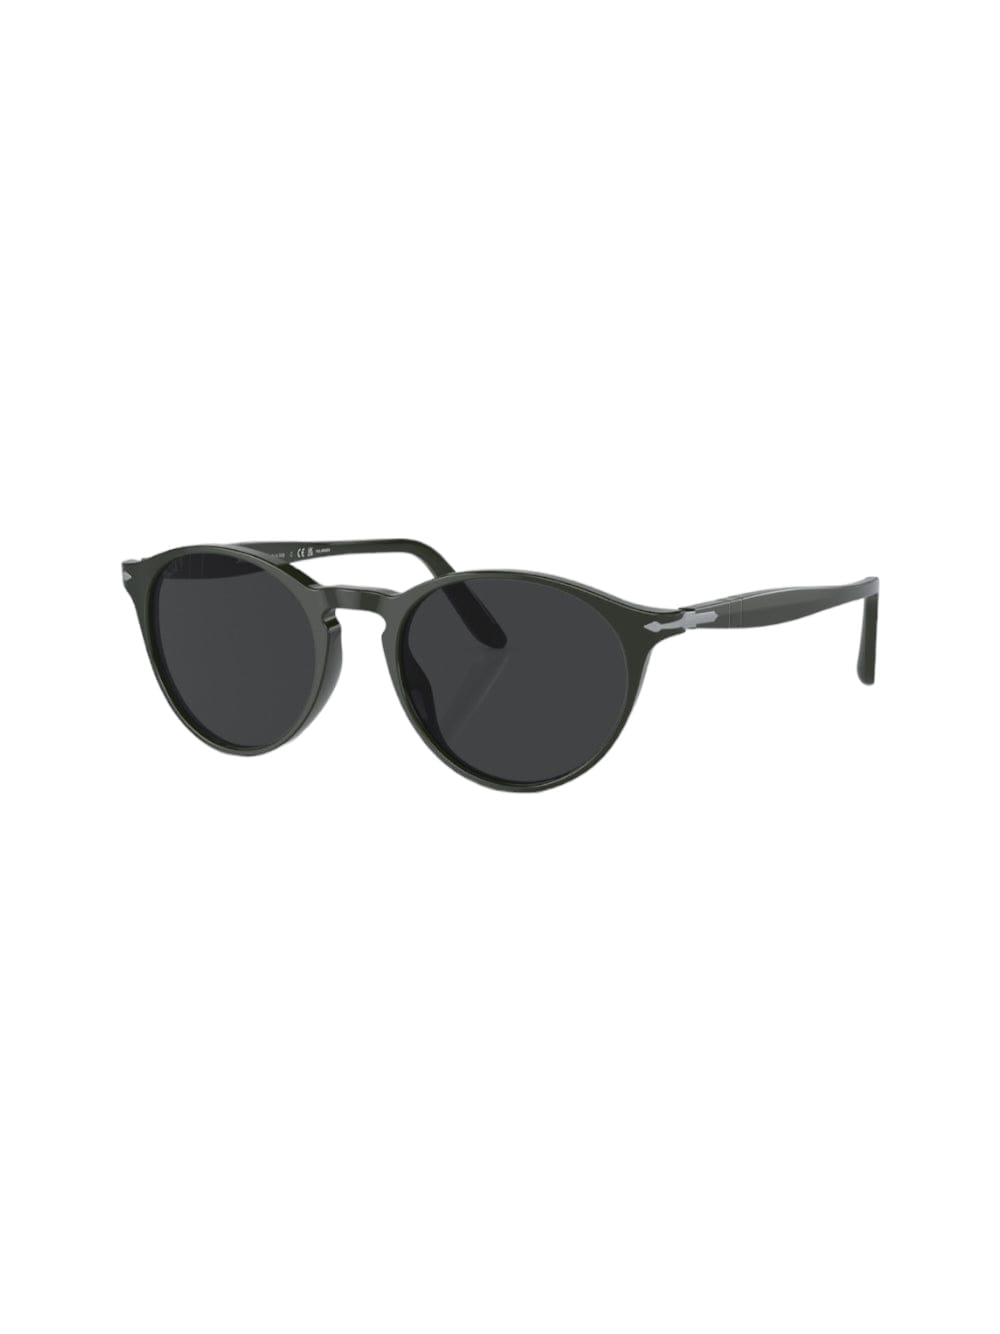 Persol 3092-s-m - Green Sunglasses